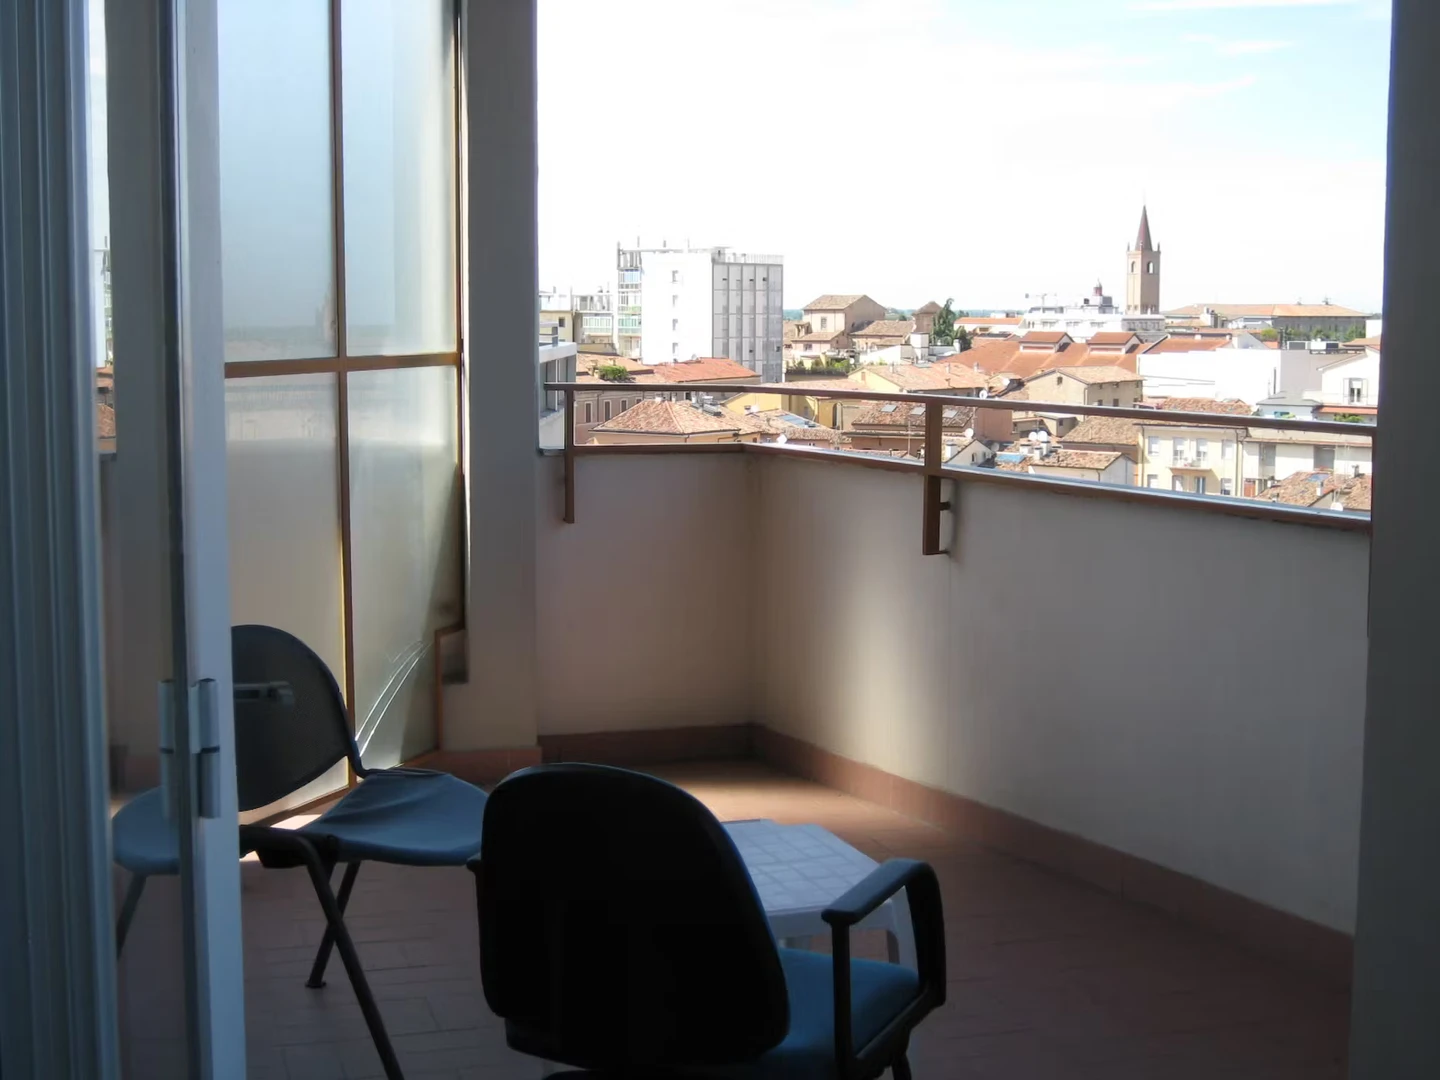 Alquiler de habitación en piso compartido en Forlì